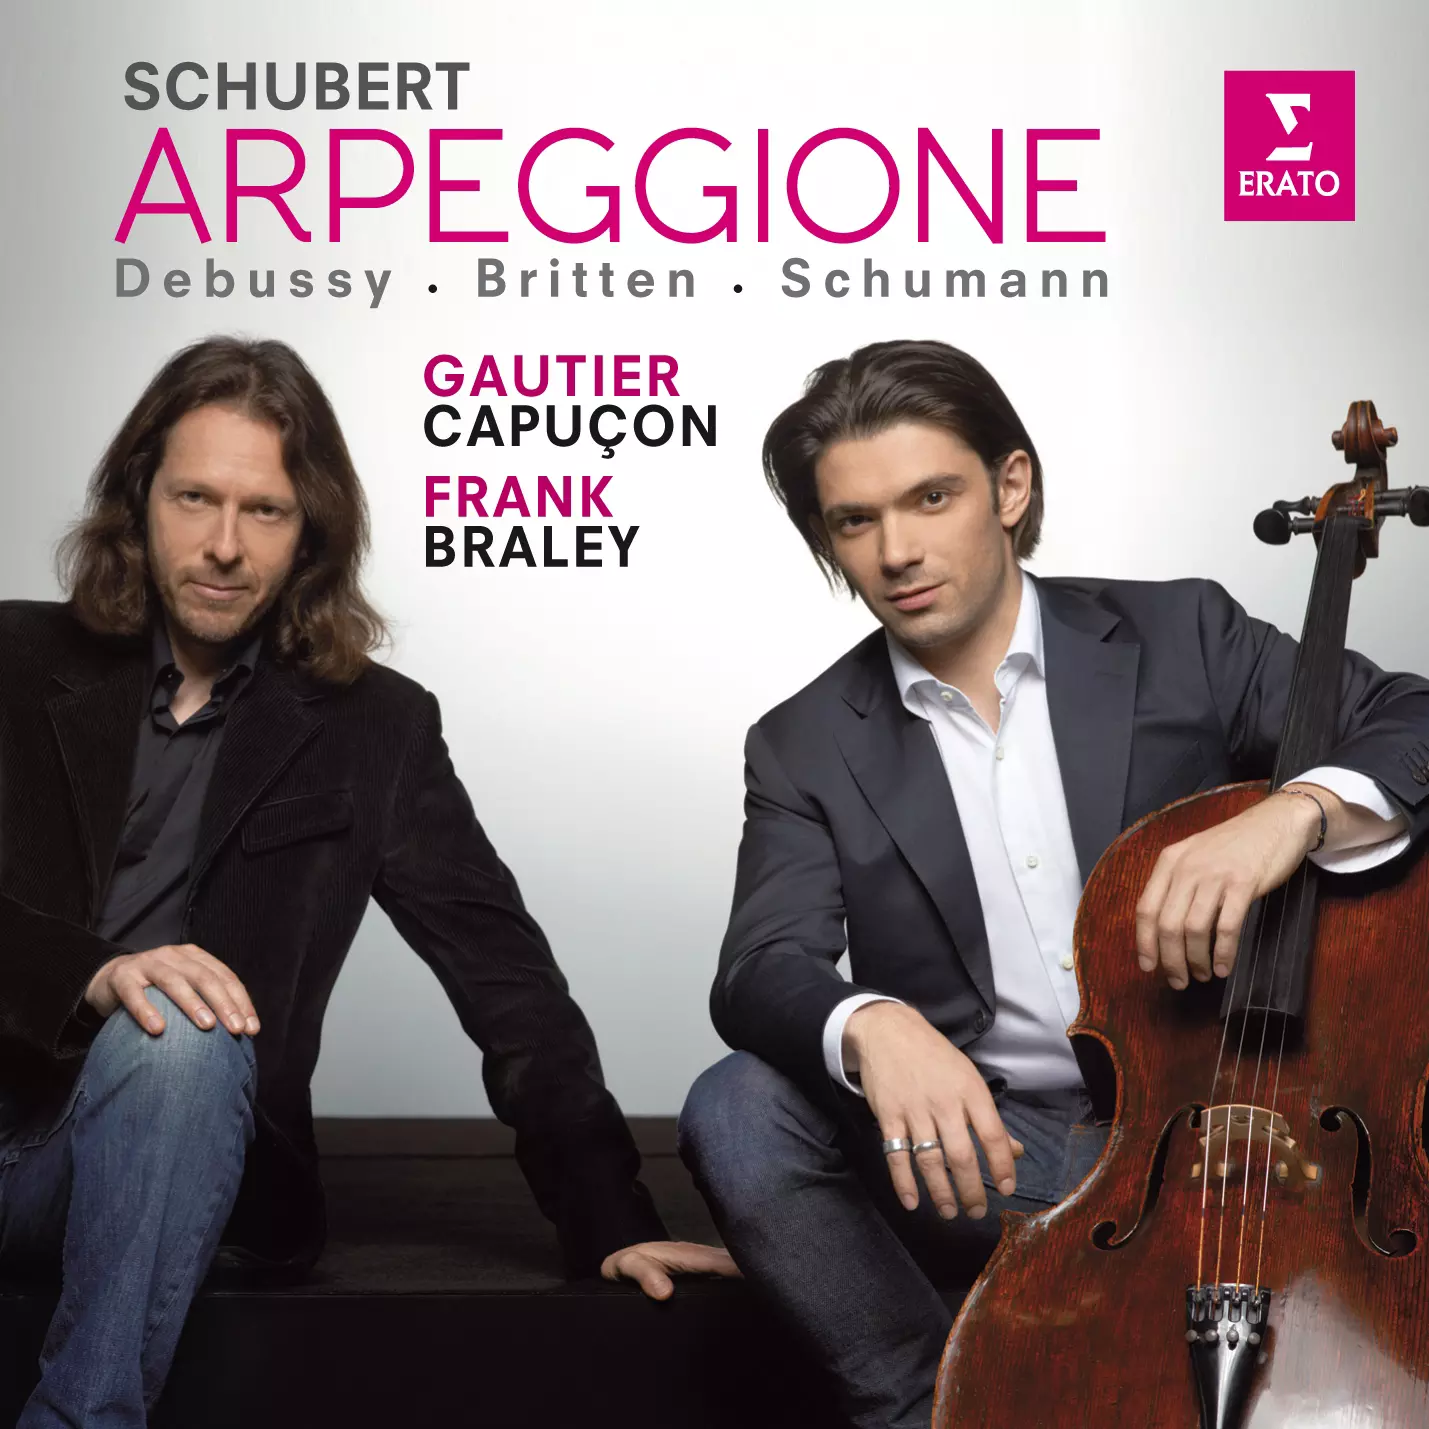 Schubert: Arpeggione sonata; Schumann, Debussy, Britten: works for cello